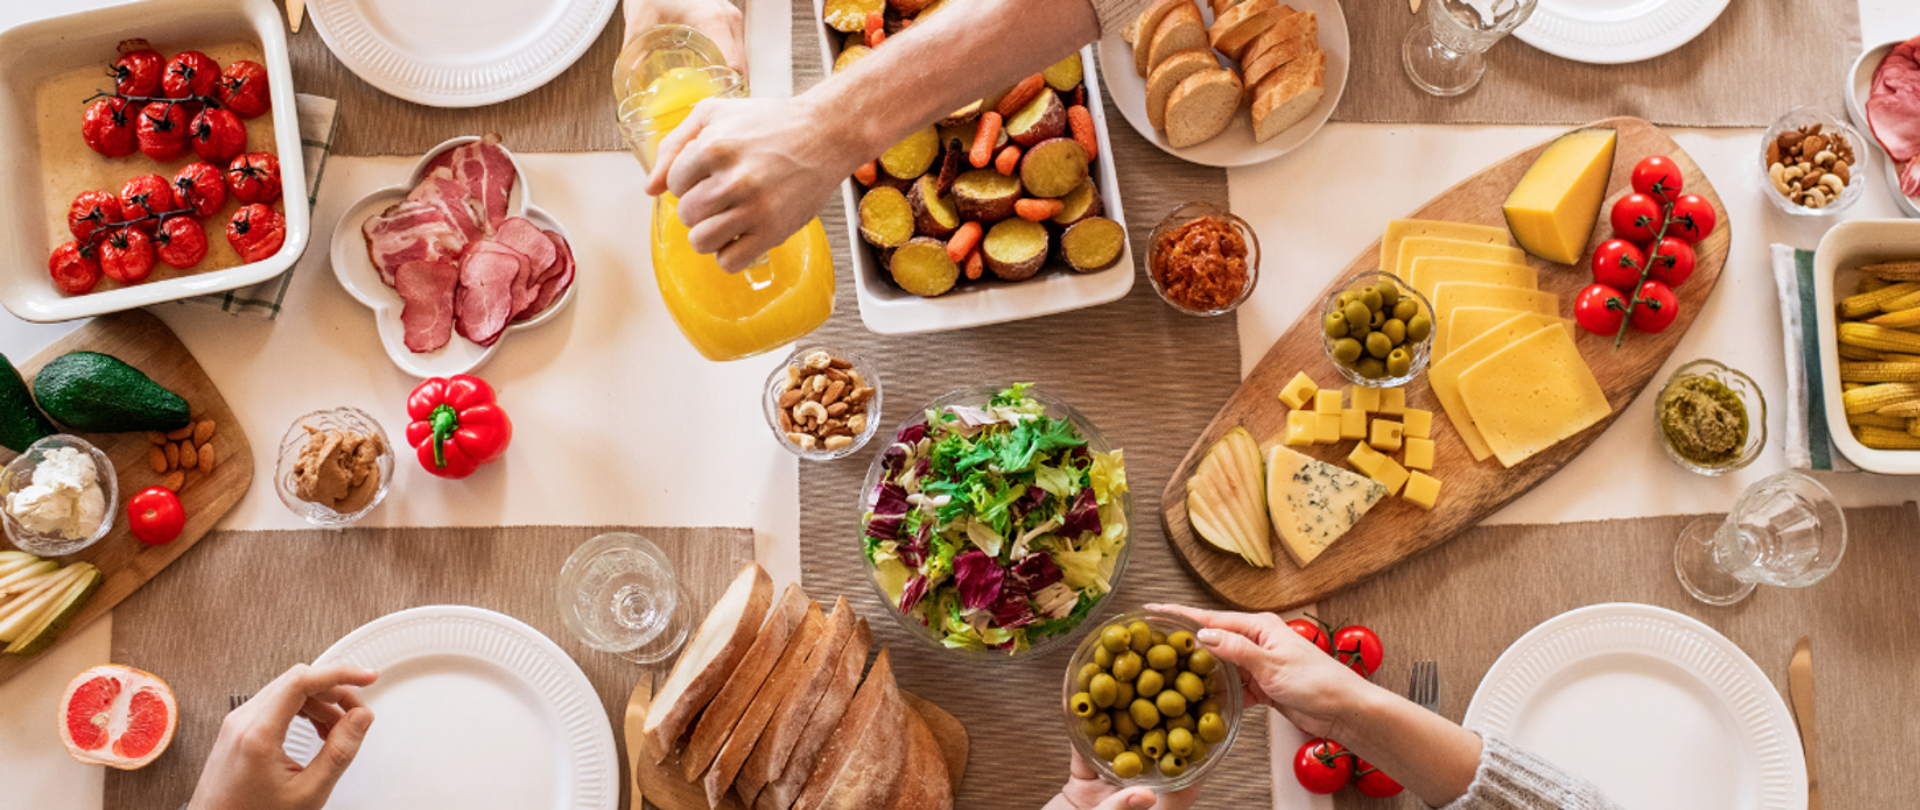 Grafika przedstawia suto zastawiony stół, z kolorowym, różnorodnym jedzeniem. Widok jest z góry. Na zdjęciu widać ręce trzech osób, które sięgają po jedzenie. 